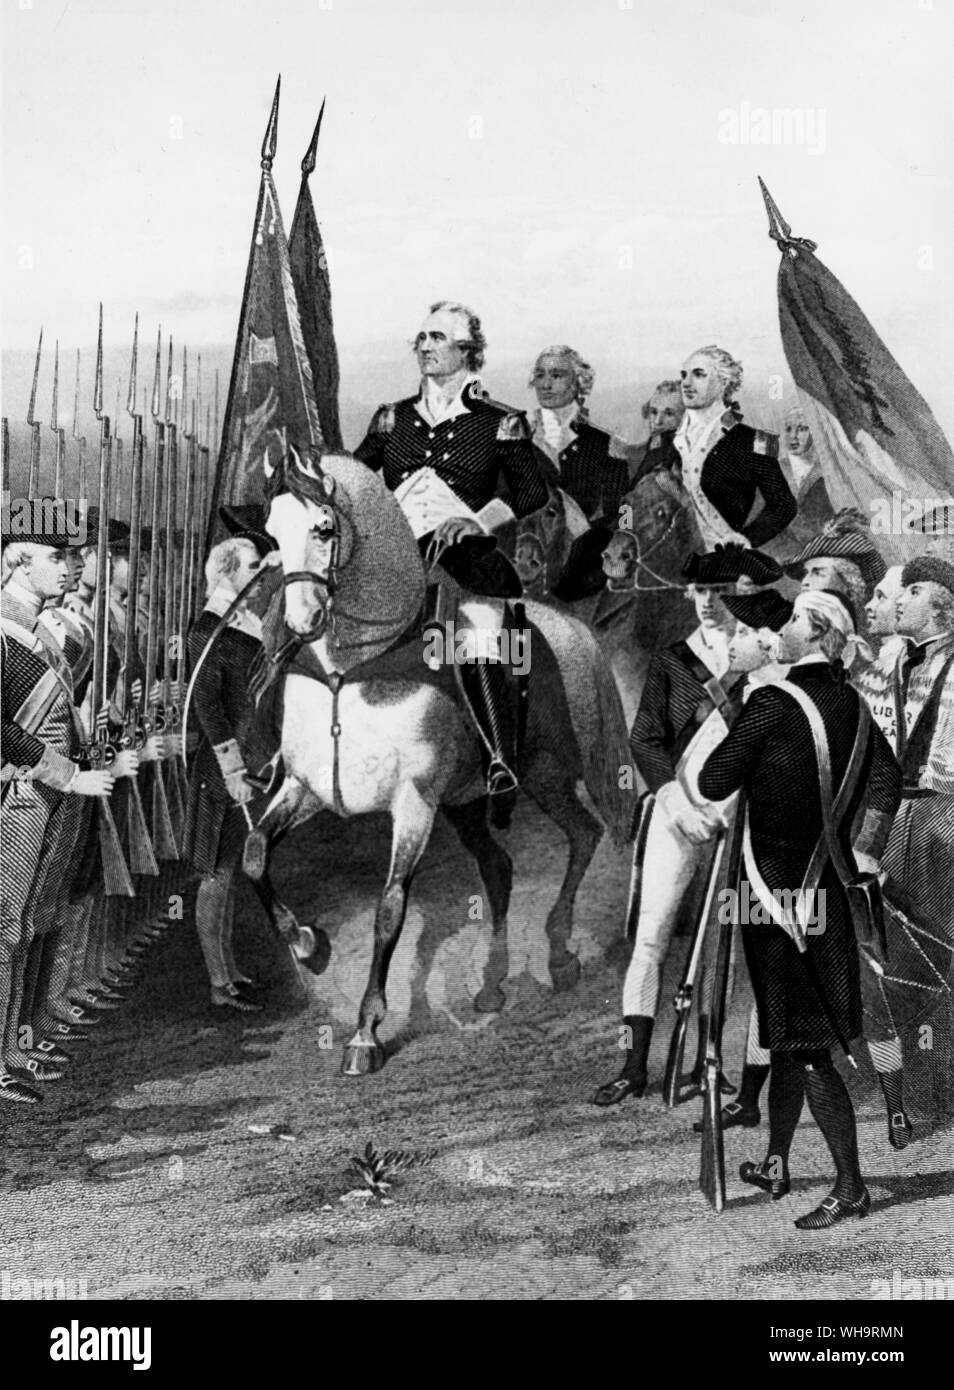 Befehl George Washington unter der Armee. Der erste Präsident der USA, nach der Unabhängigkeit im Jahre 1776. Stockfoto